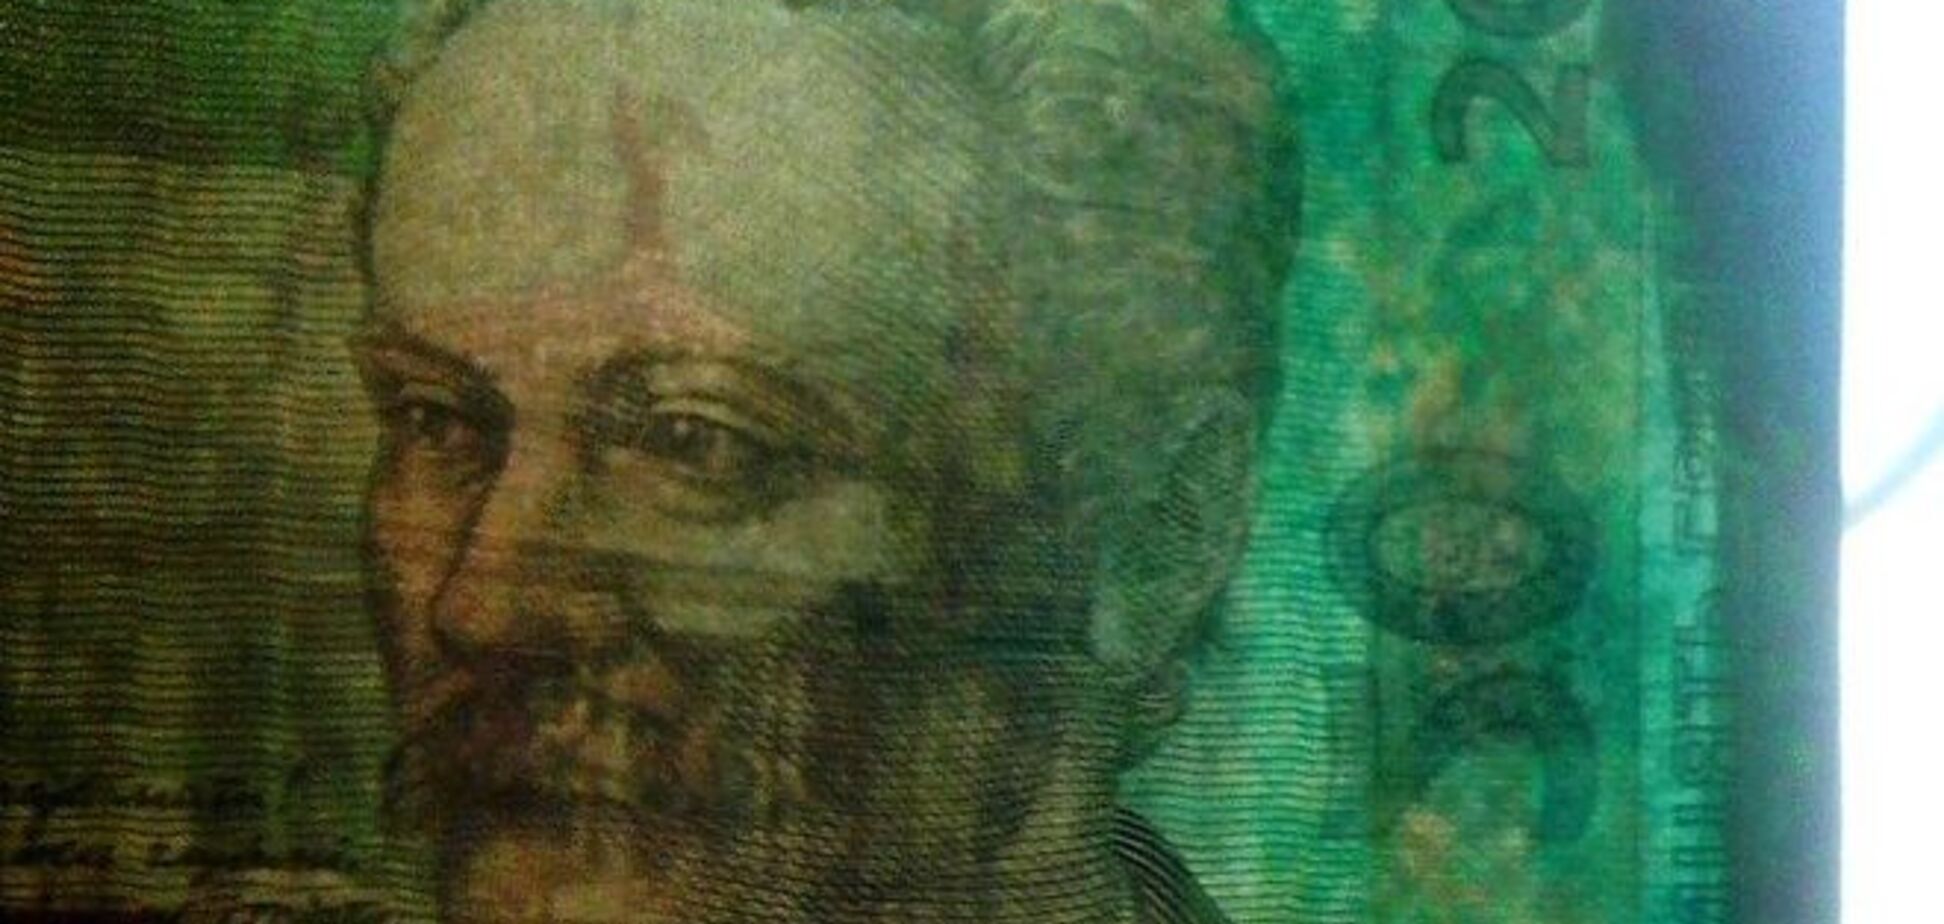 Отмывание денег: 'ополченцы' перекрасили меченые гривни - фотофакт